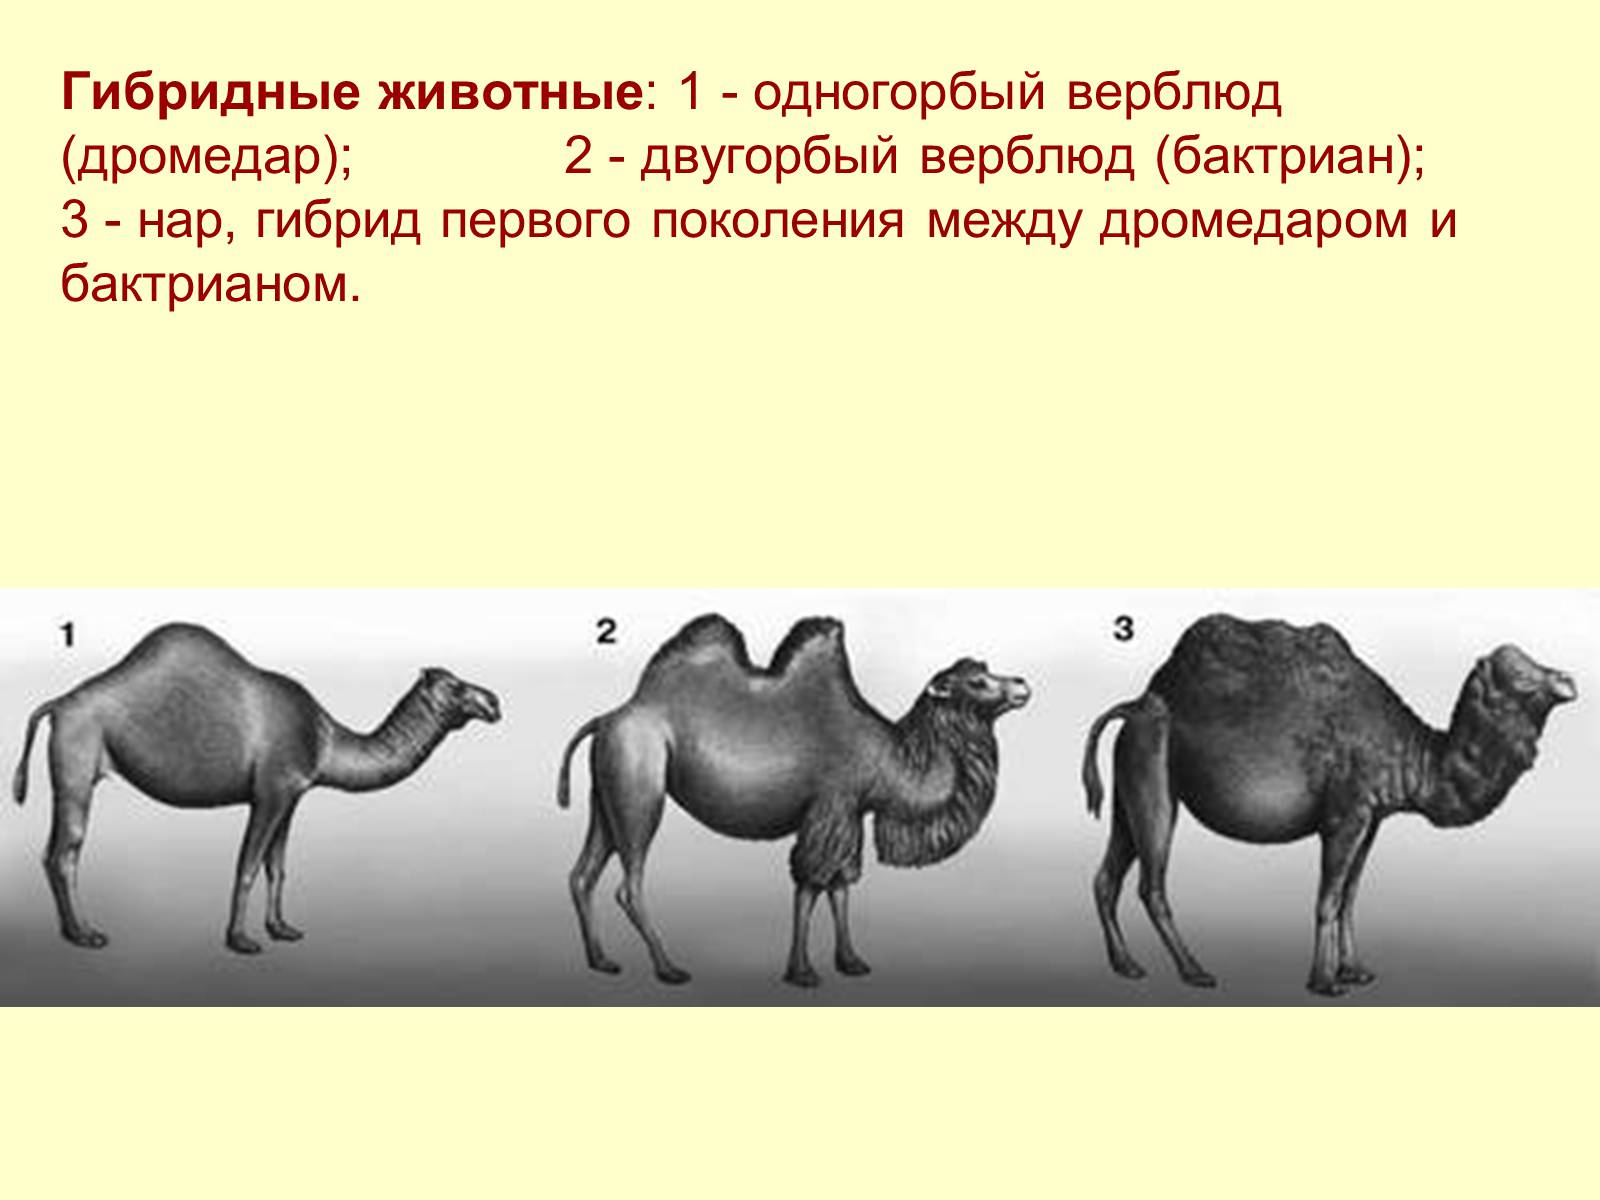 Биртуган. Двугорбый верблюд бактриан Родина. Селекция двугорбый верблюд. Верблюд двугорбый Туркменистан. Нар одногорбый верблюд.